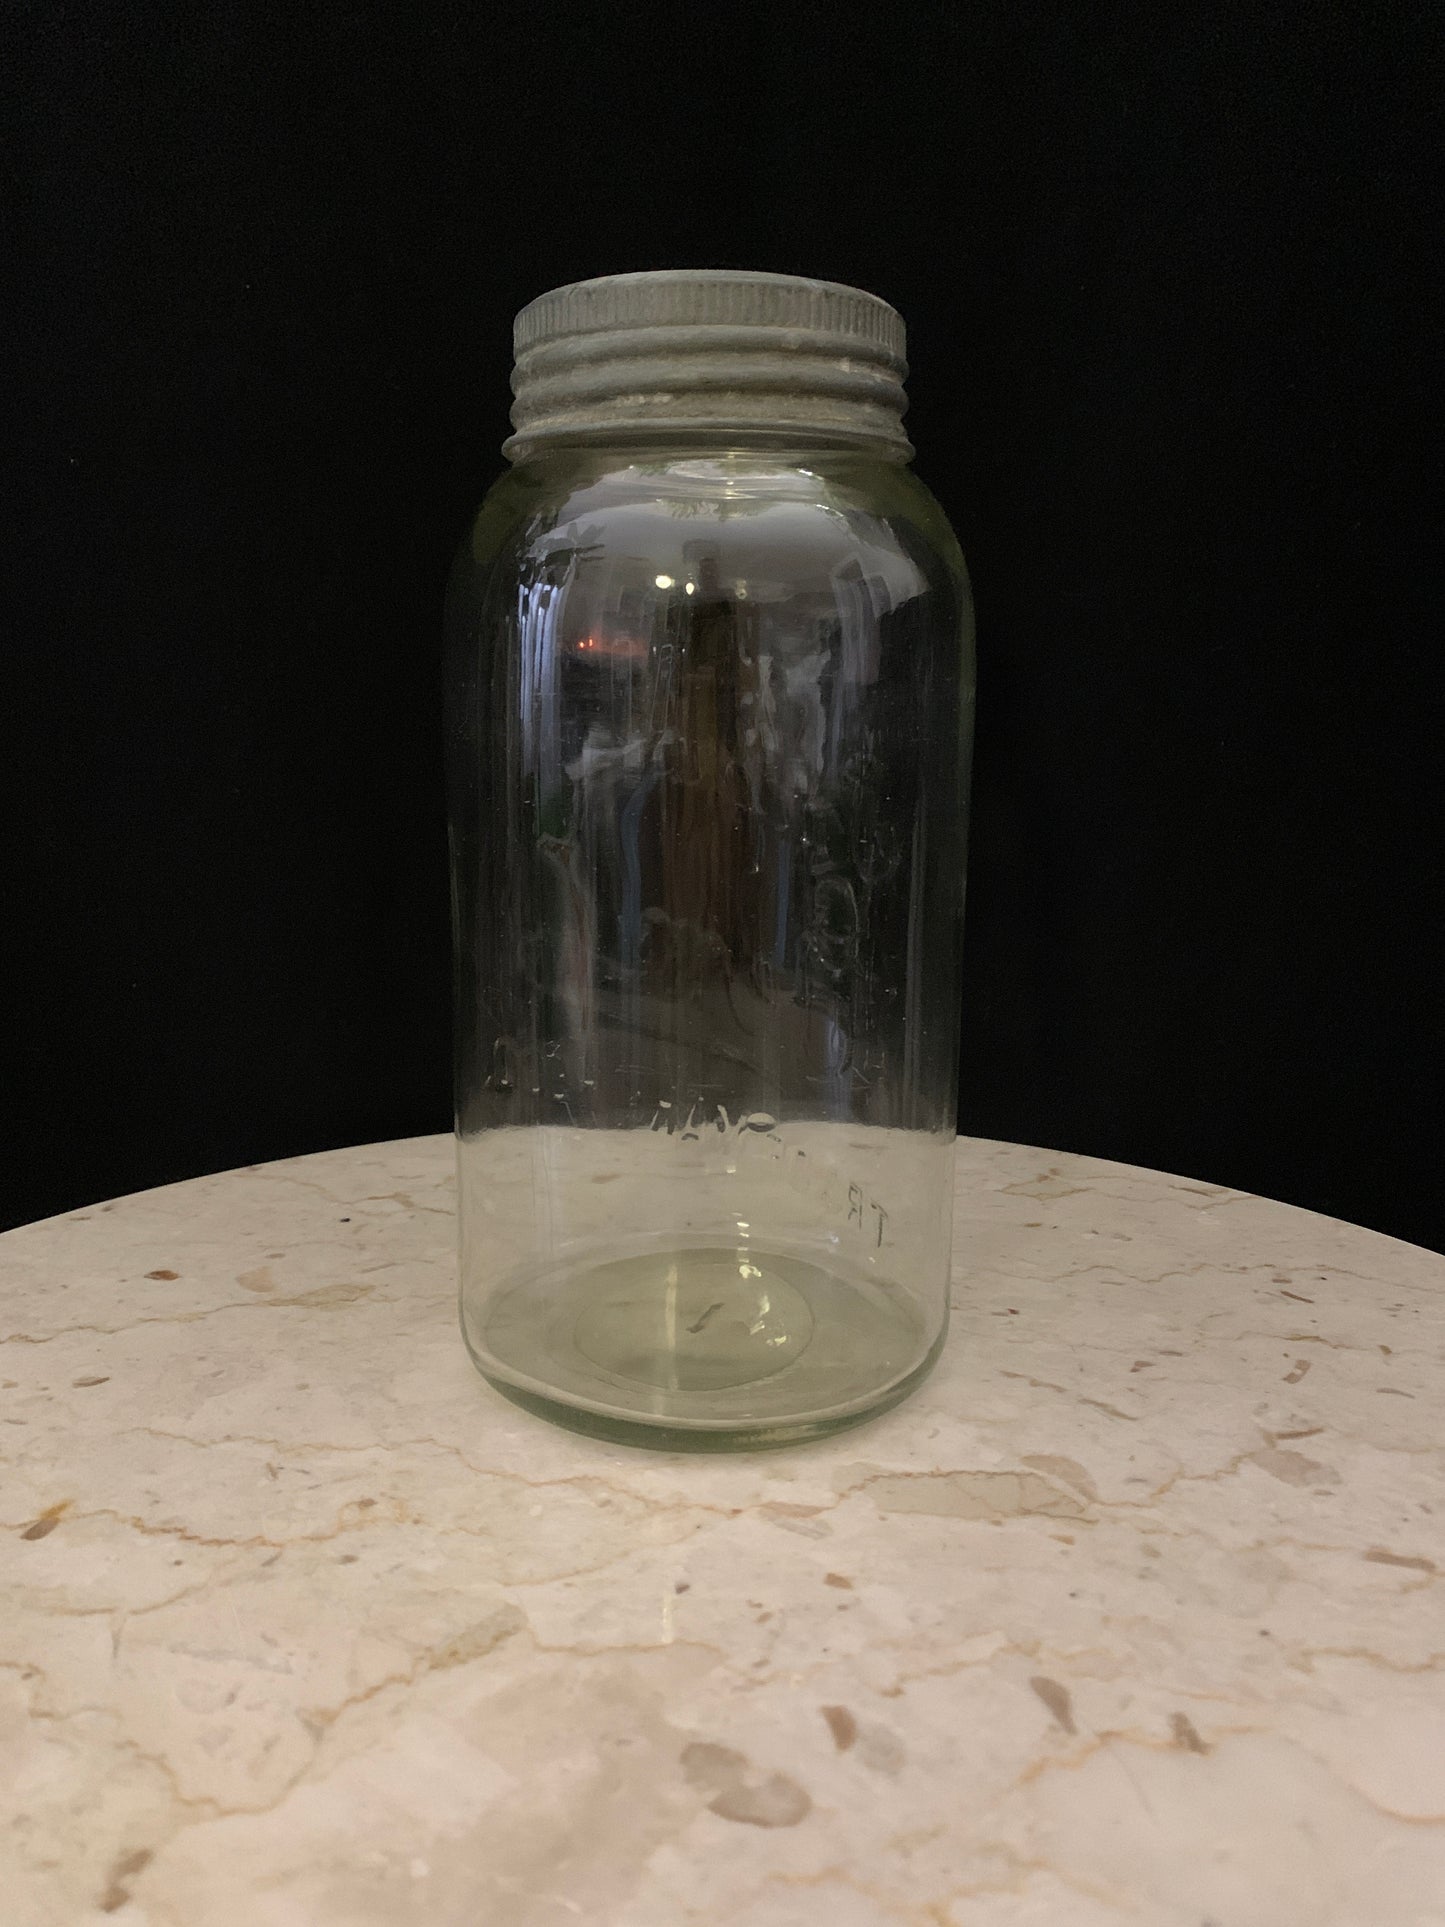 Extra Large Antique Canning Jar Improved Gem Extra Large Sealer Jar Antique Farmhouse Kitchen